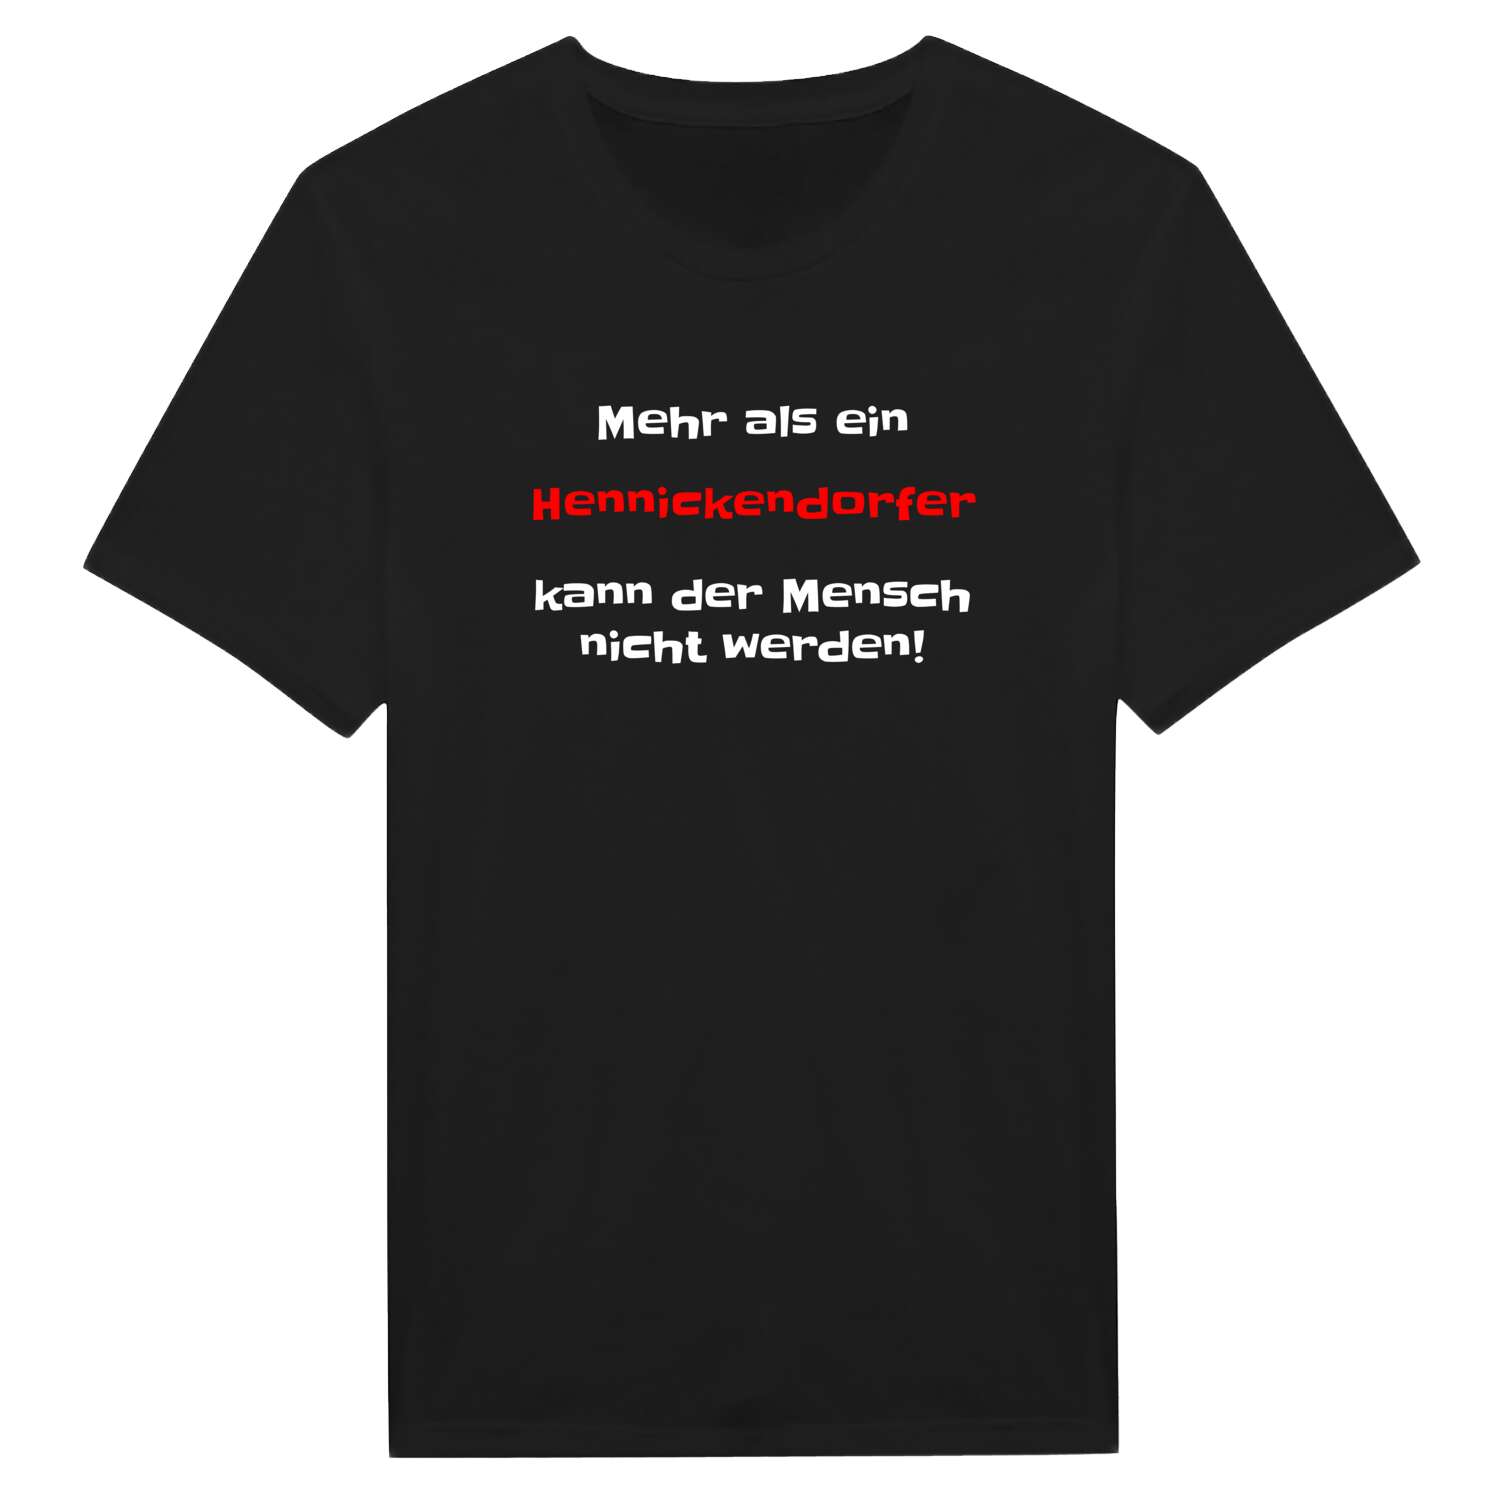 Hennickendorf T-Shirt »Mehr als ein«